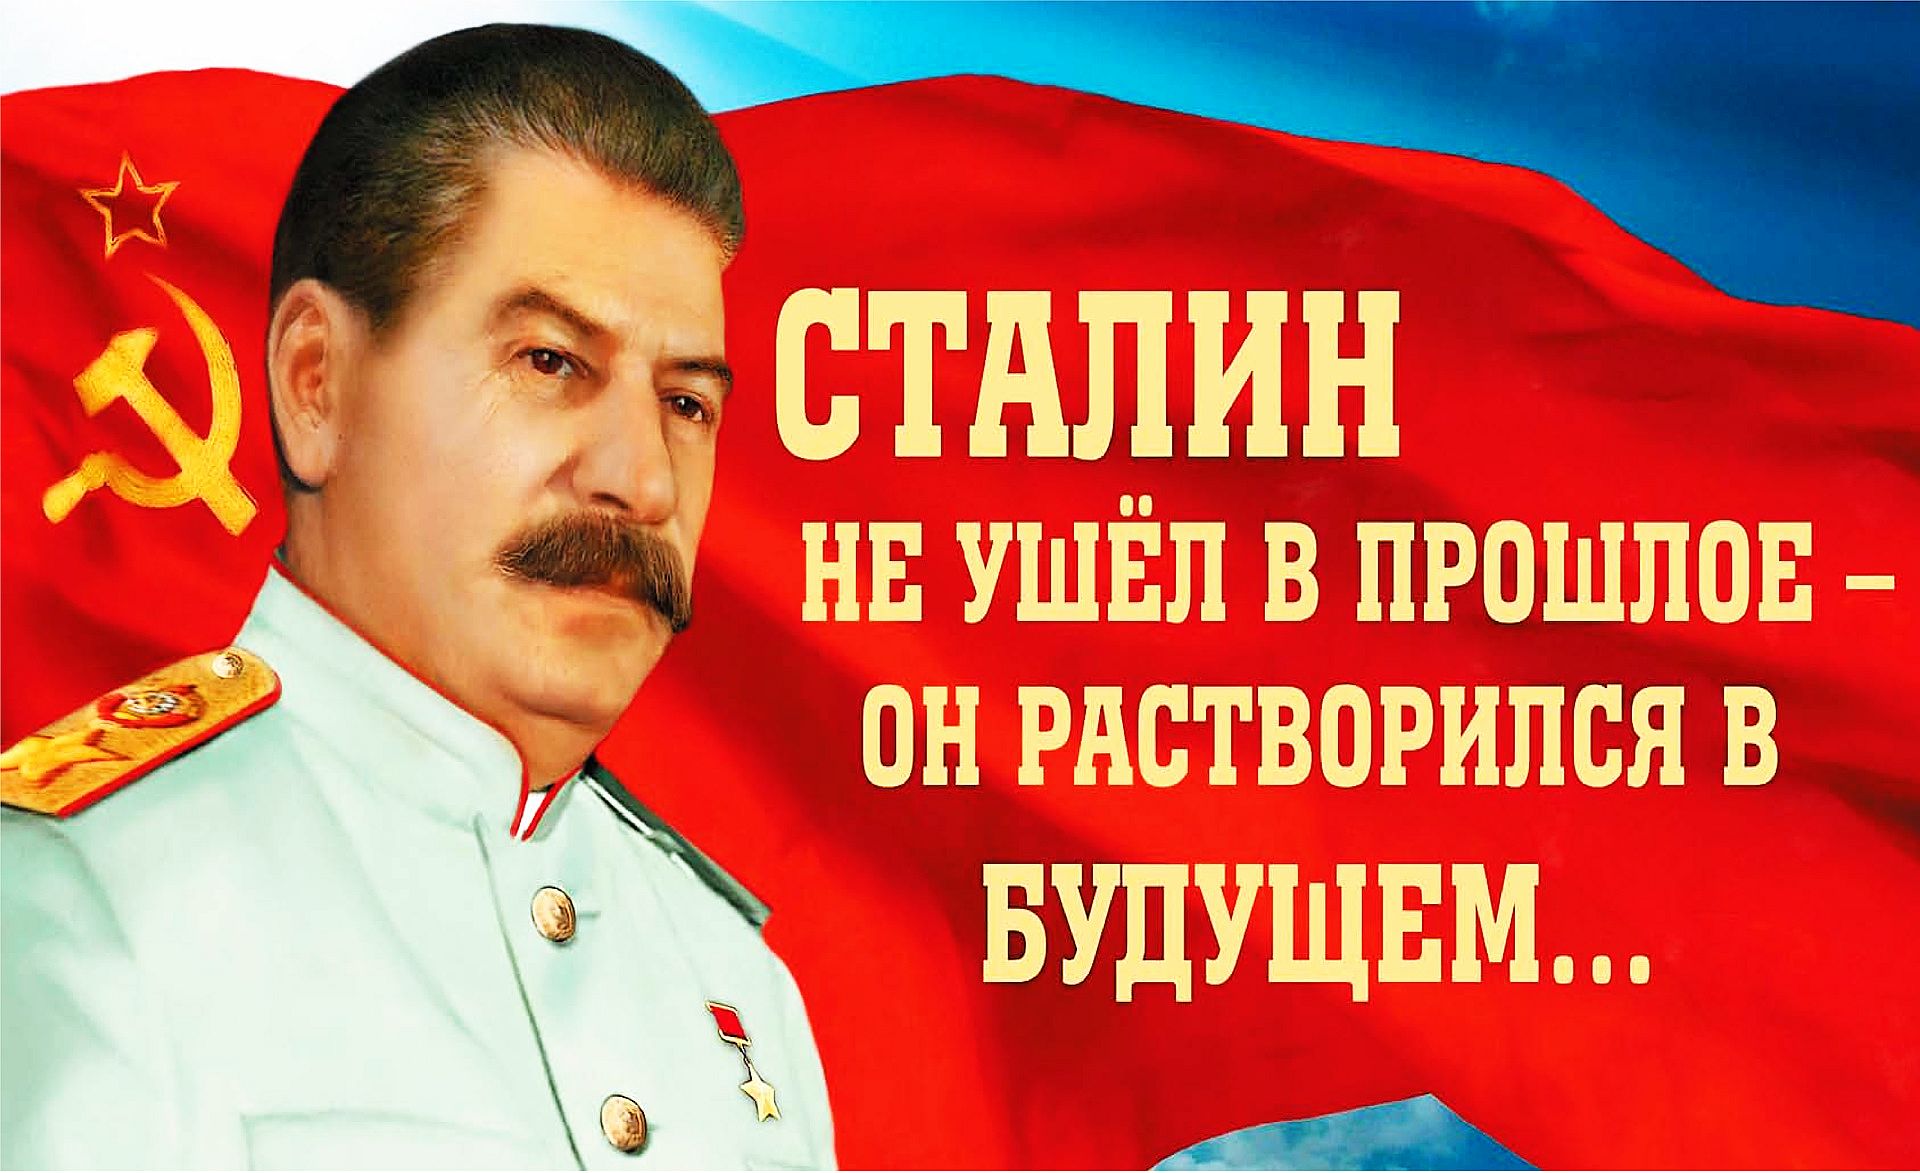 Сталин растворился в будущем